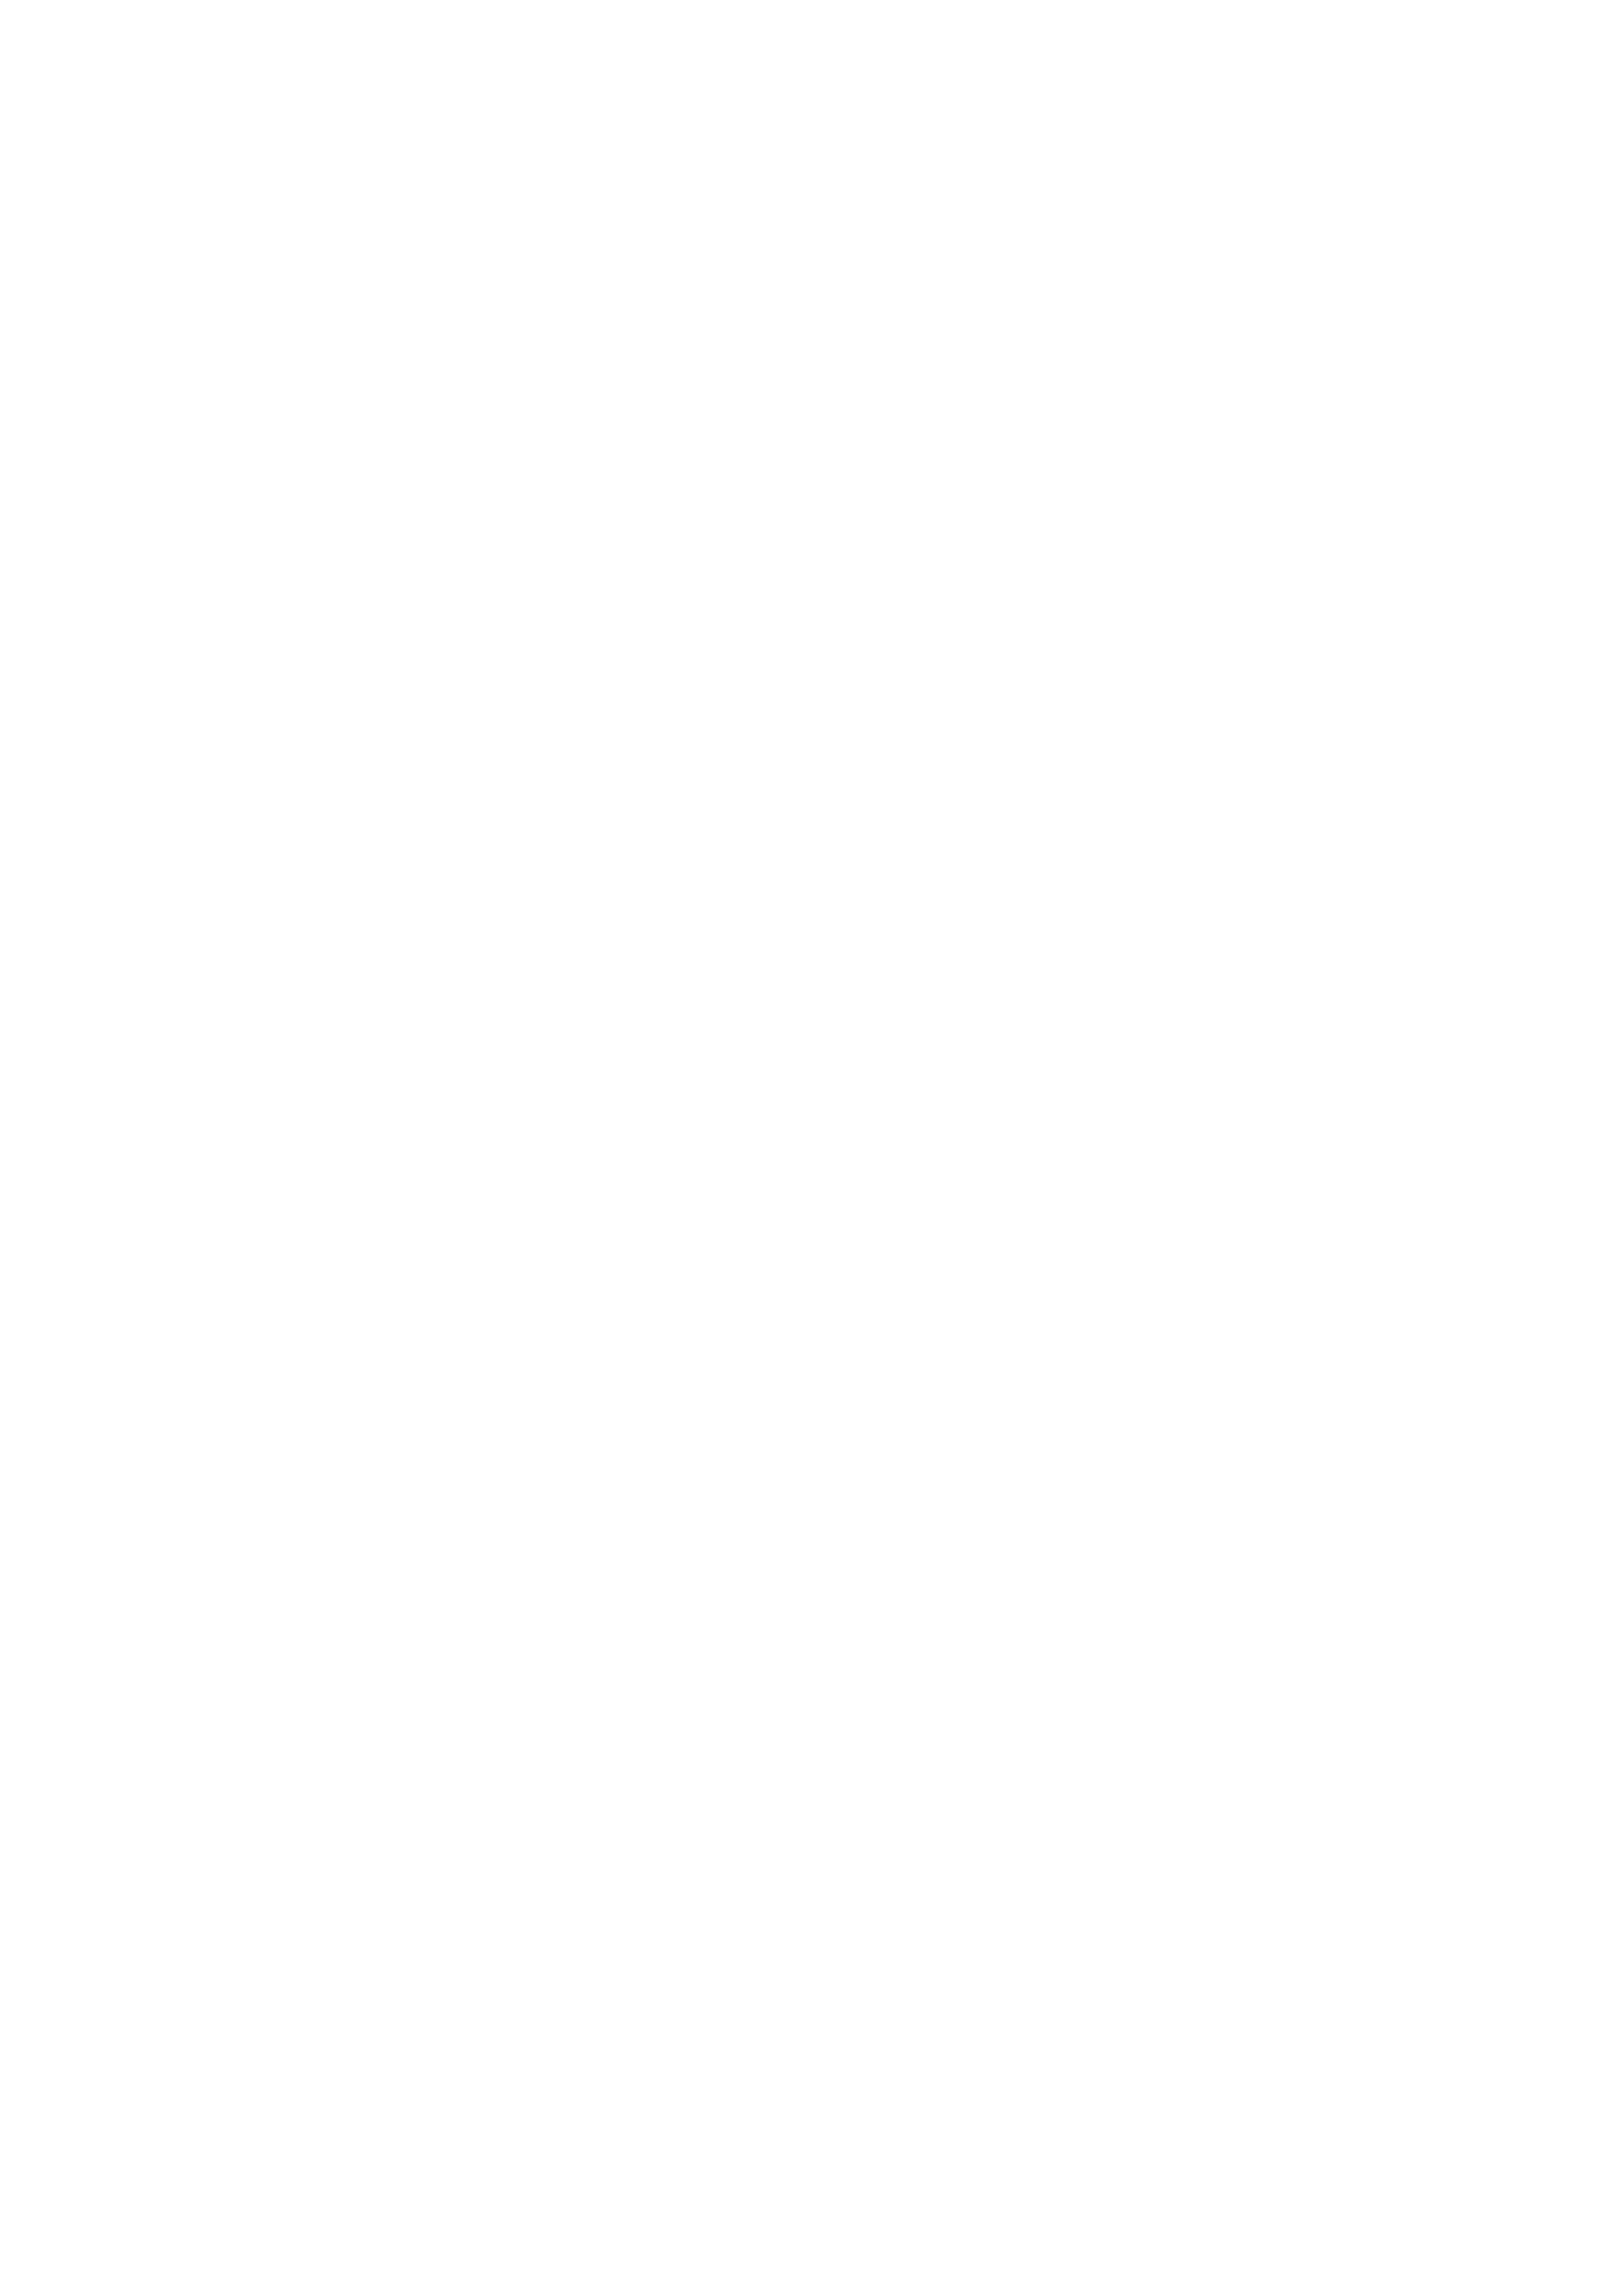 Follow Us on Soundcloud